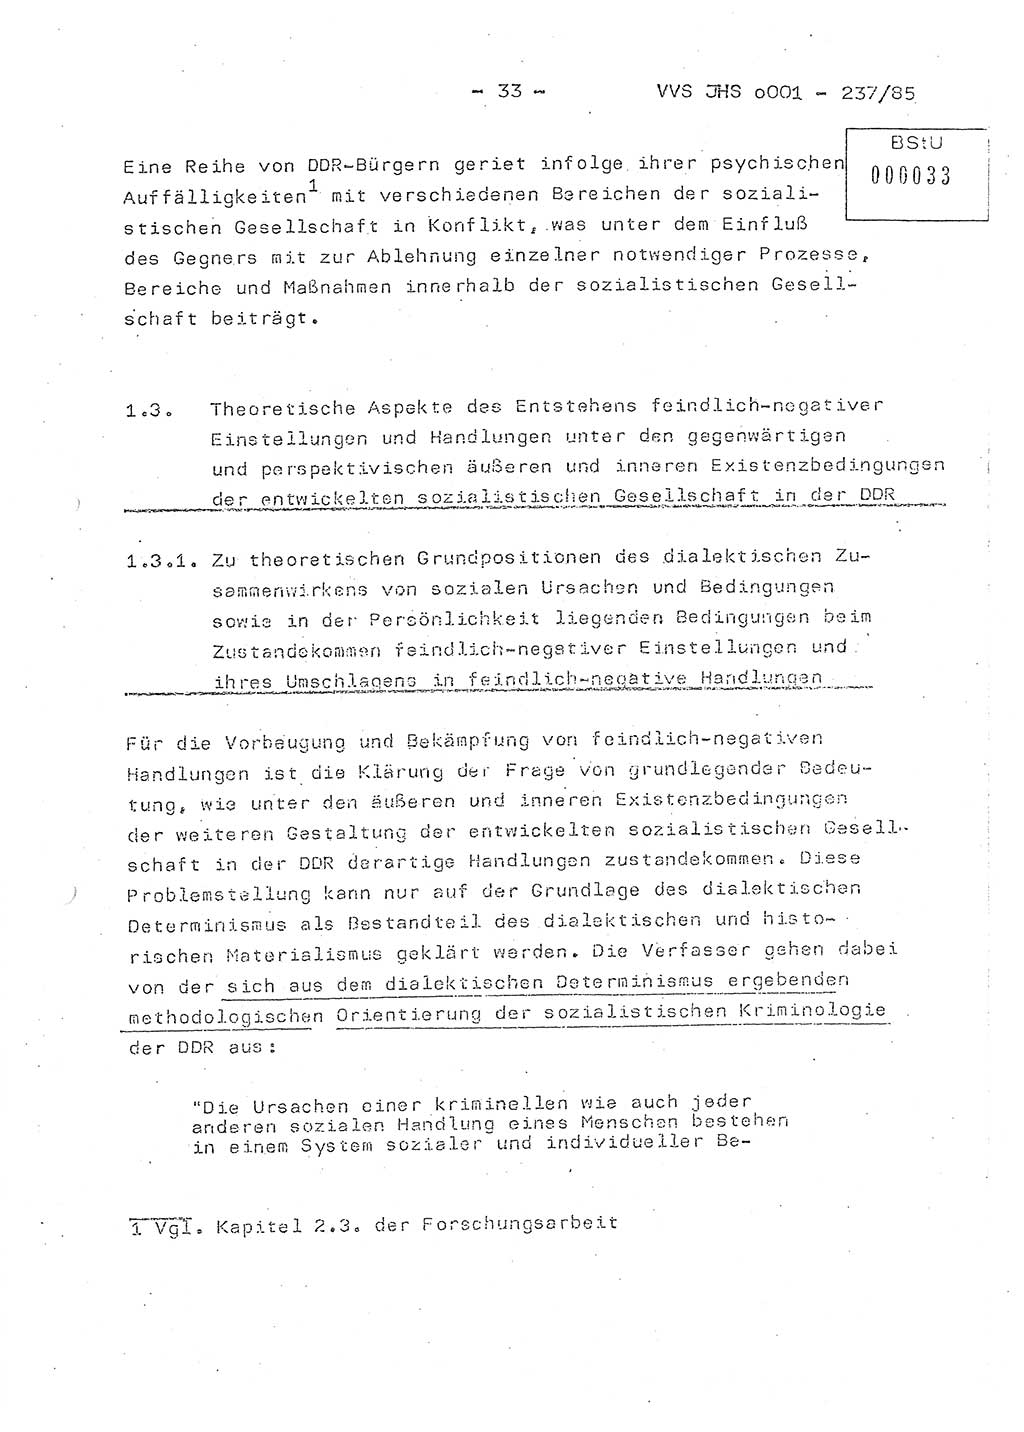 Dissertation Oberstleutnant Peter Jakulski (JHS), Oberstleutnat Christian Rudolph (HA Ⅸ), Major Horst Böttger (ZMD), Major Wolfgang Grüneberg (JHS), Major Albert Meutsch (JHS), Ministerium für Staatssicherheit (MfS) [Deutsche Demokratische Republik (DDR)], Juristische Hochschule (JHS), Vertrauliche Verschlußsache (VVS) o001-237/85, Potsdam 1985, Seite 33 (Diss. MfS DDR JHS VVS o001-237/85 1985, S. 33)